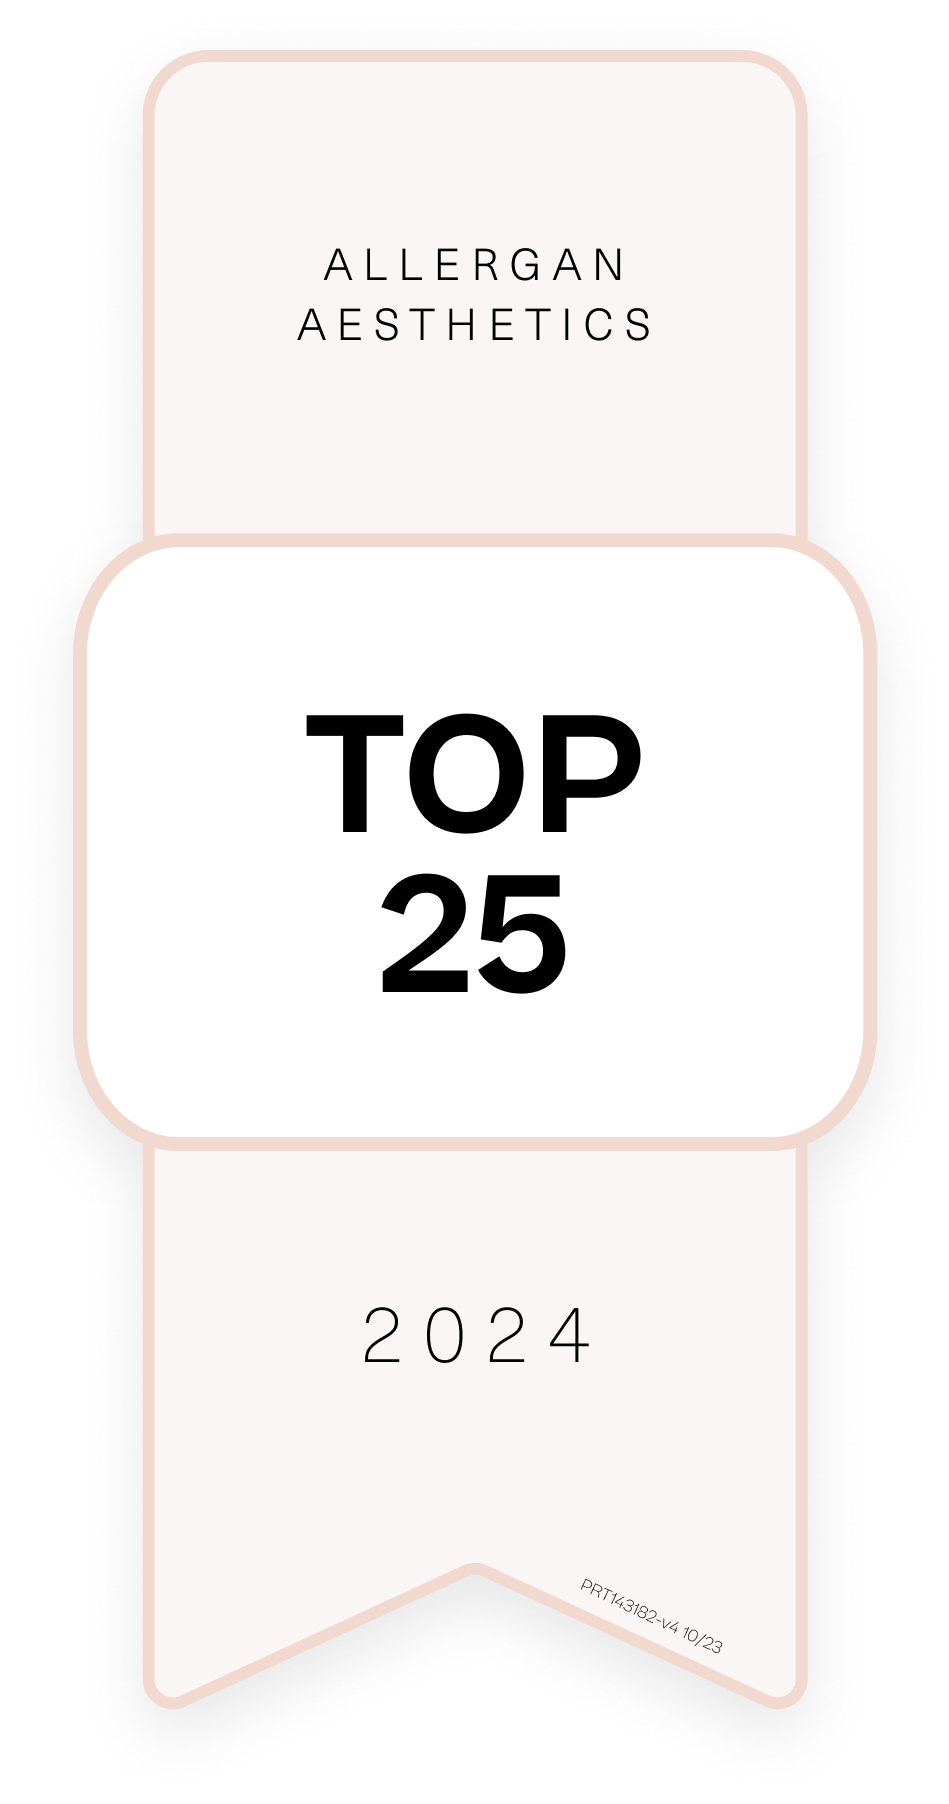 Allergan Aesthetics Top 25 in 2024